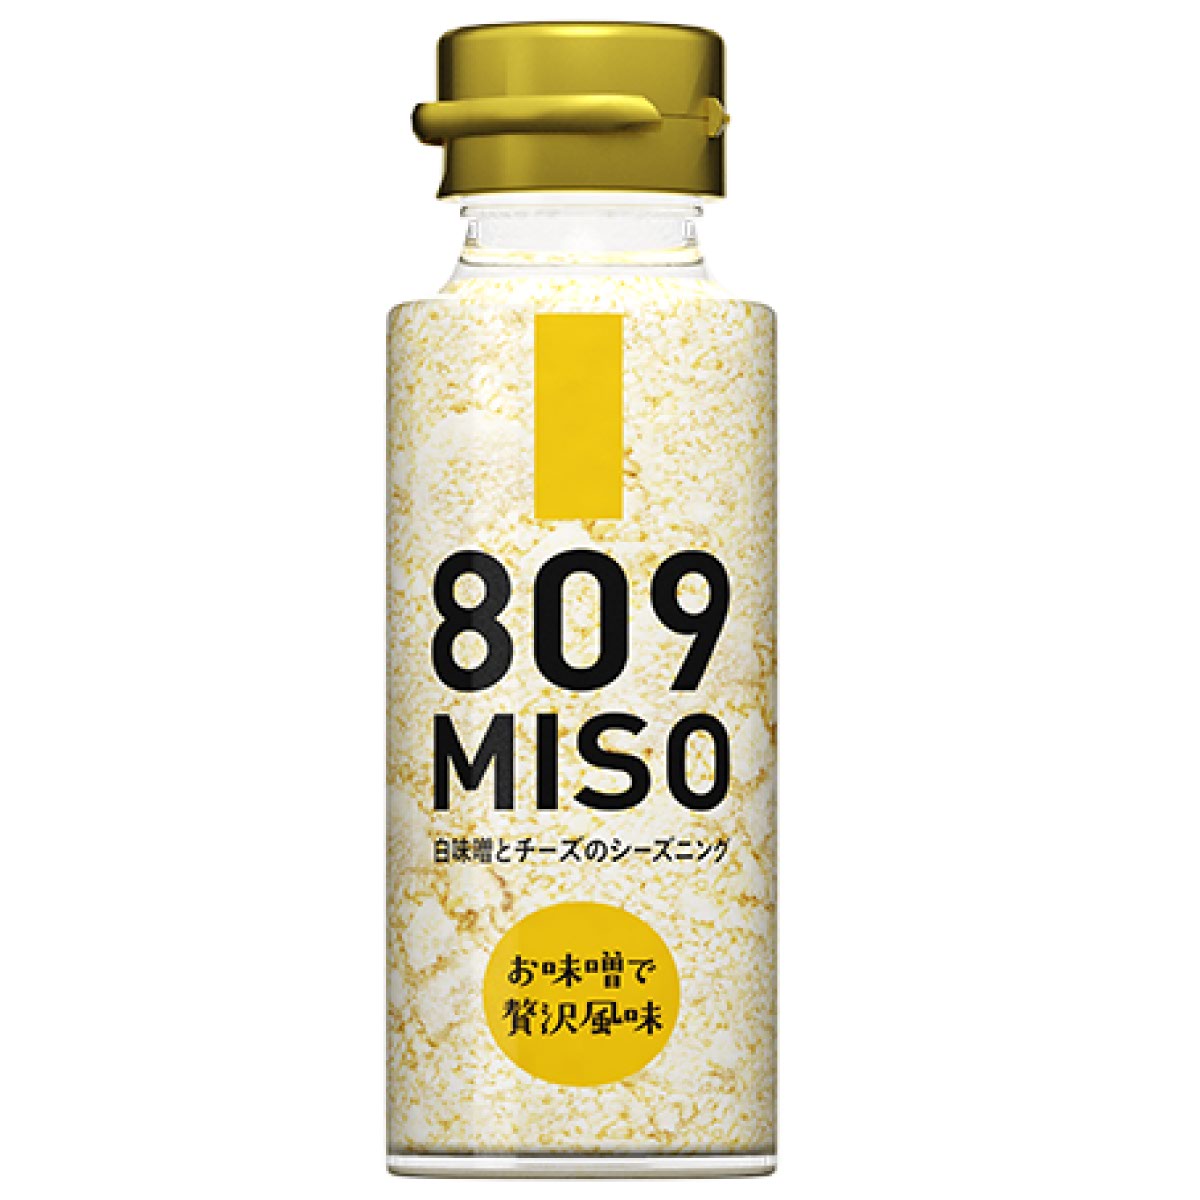 809 MISO 白味噌とチーズのシーズニング ( フリーズドライ 白みそ ） 45g 瓶入り